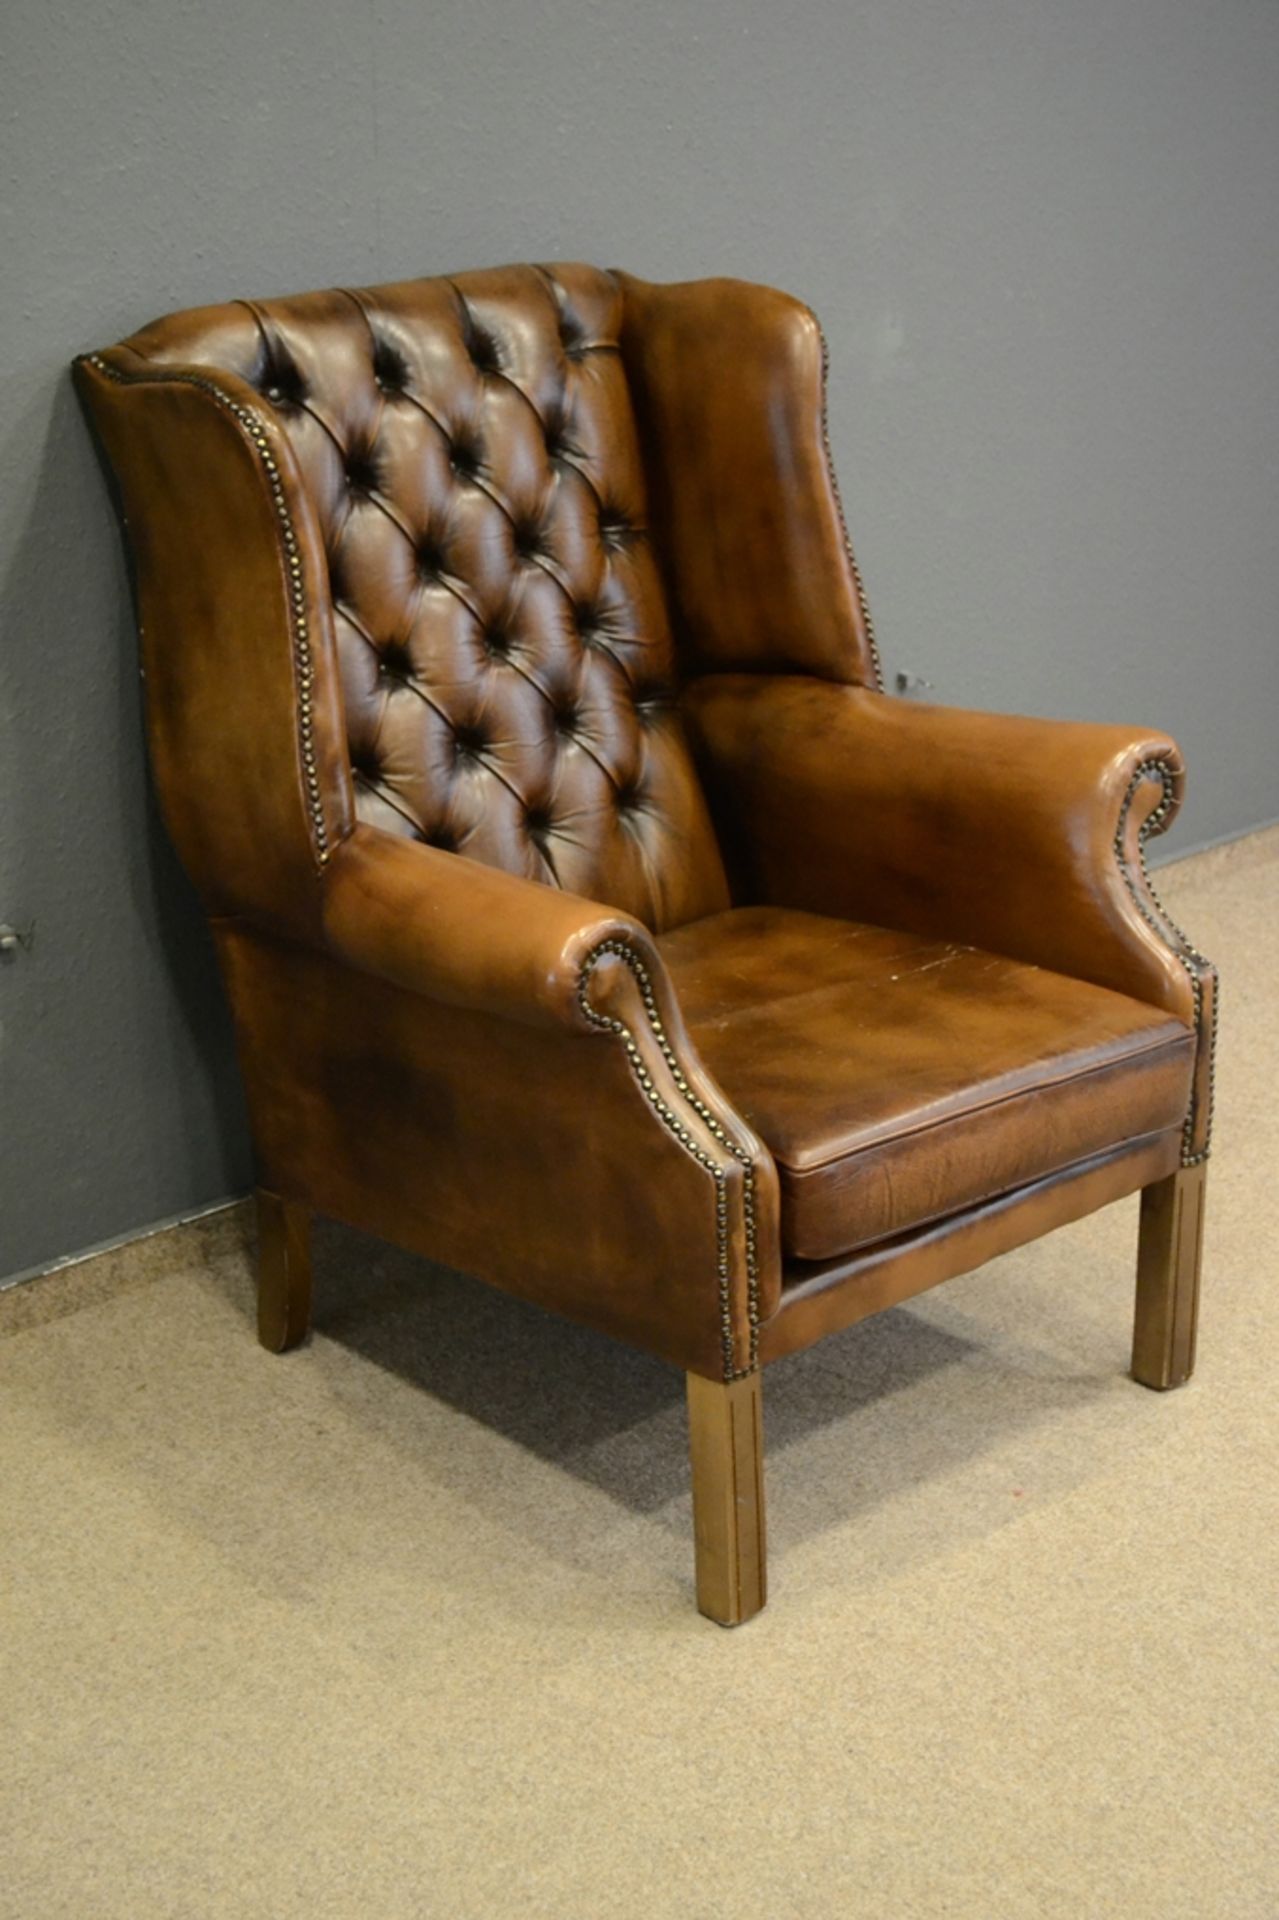 Stilvoller Ohrenbacken-Sessel, bräunliches Leder, leicht eingerollte Armlehnen, der Rücken mit soge